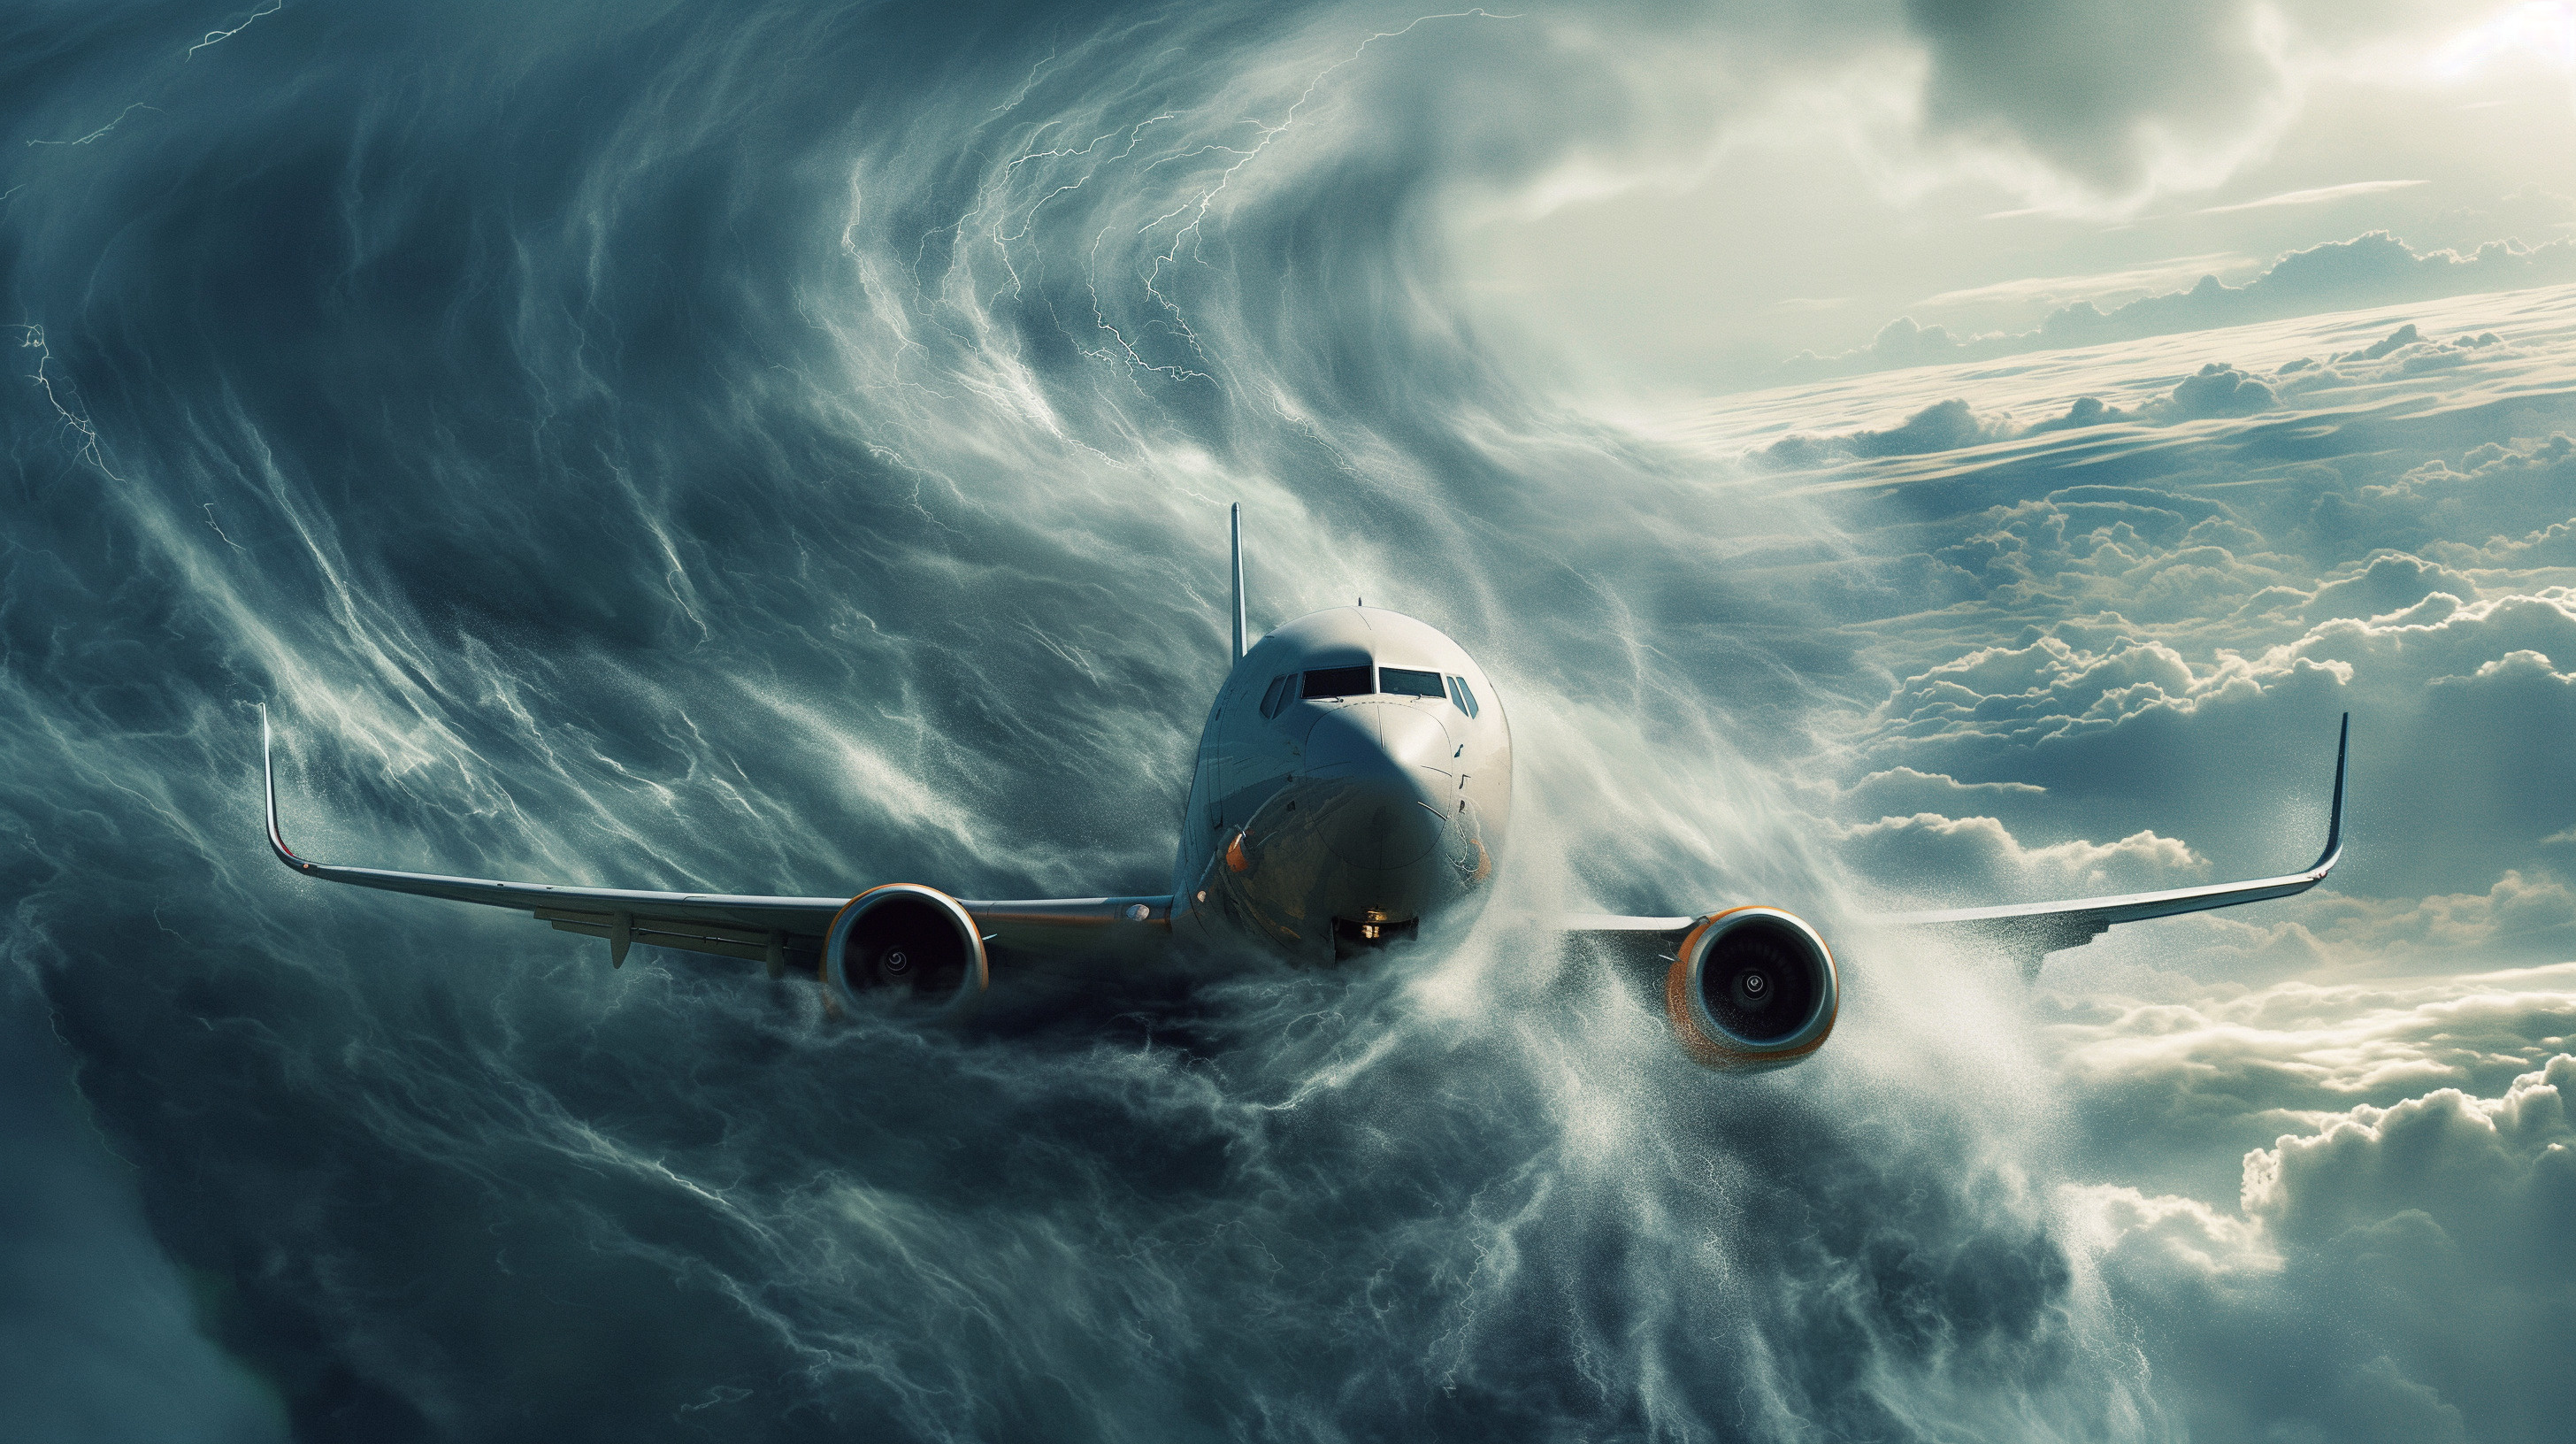 Les turbulences sont de plus en plus fréquentes depuis les années 1980. © paullawat, Adobe Stock